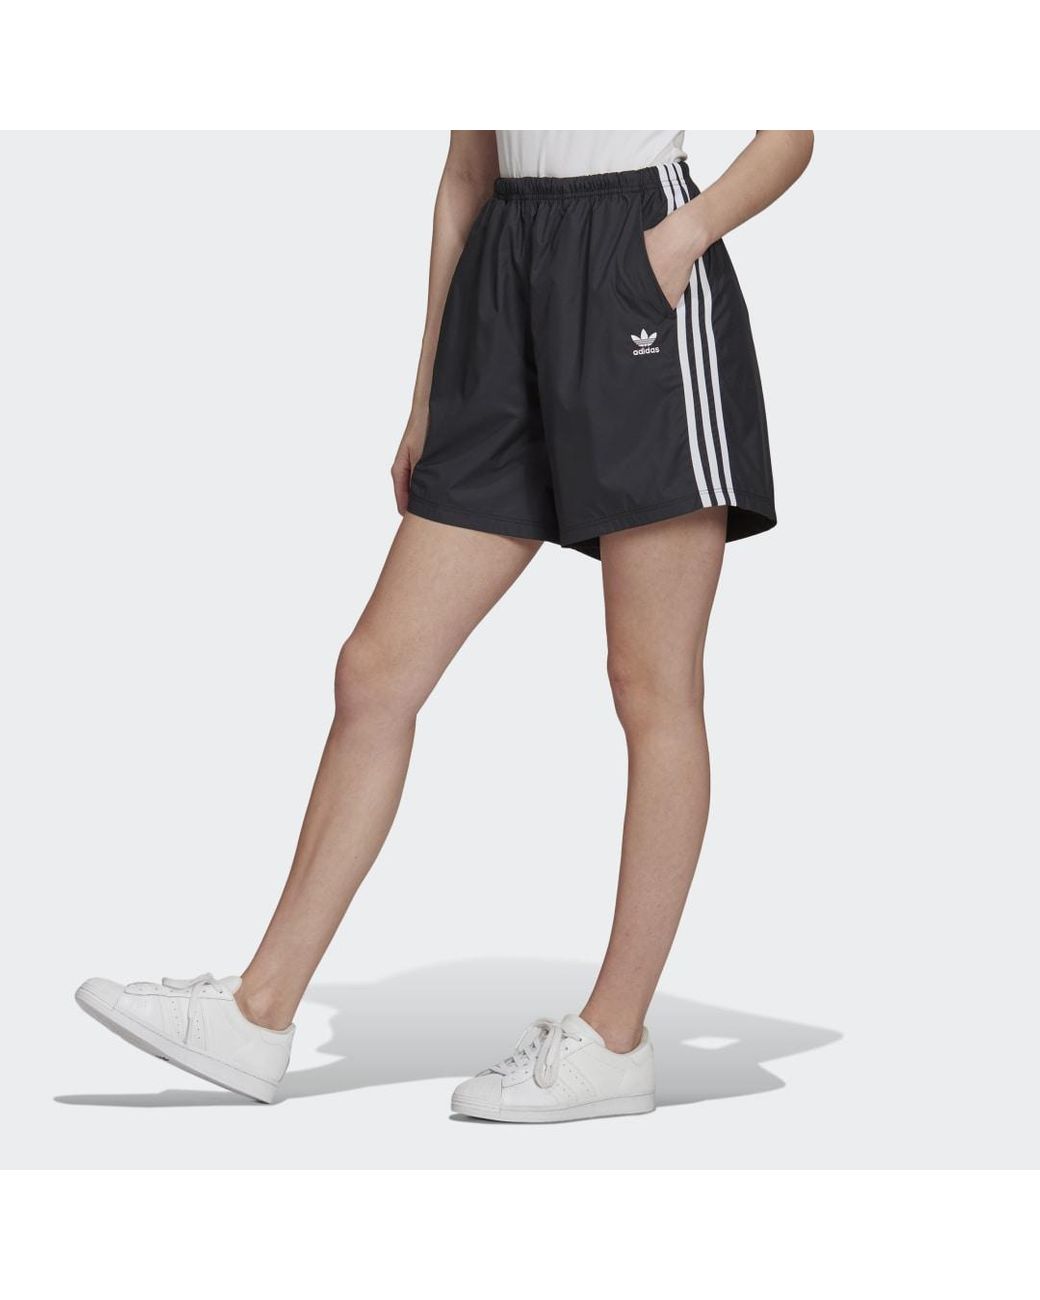 adidas Originals Adicolor Classics in DE Shorts Ripstop | Lyst Schwarz